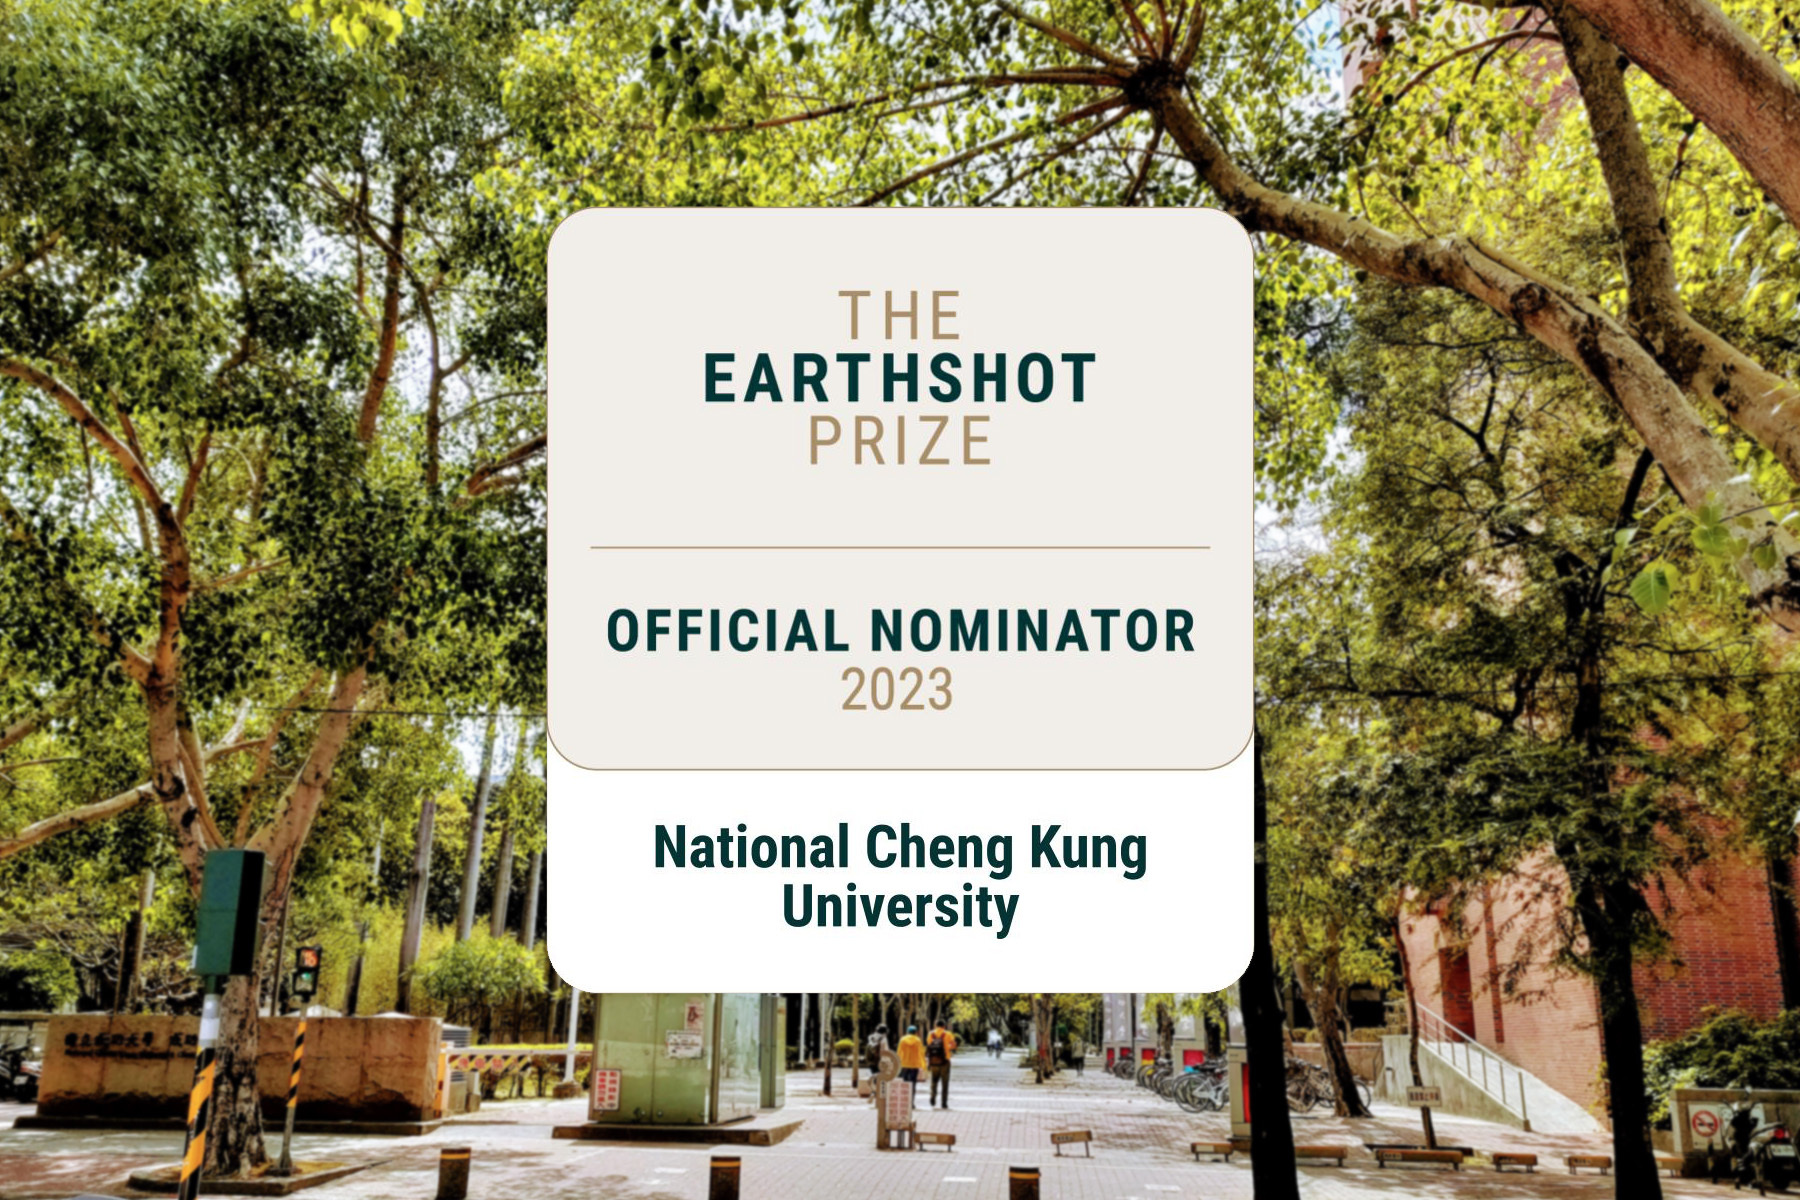 三度成為 The Earthshot Prize 提名單位　成大誠邀各界為地球永續共盡心力